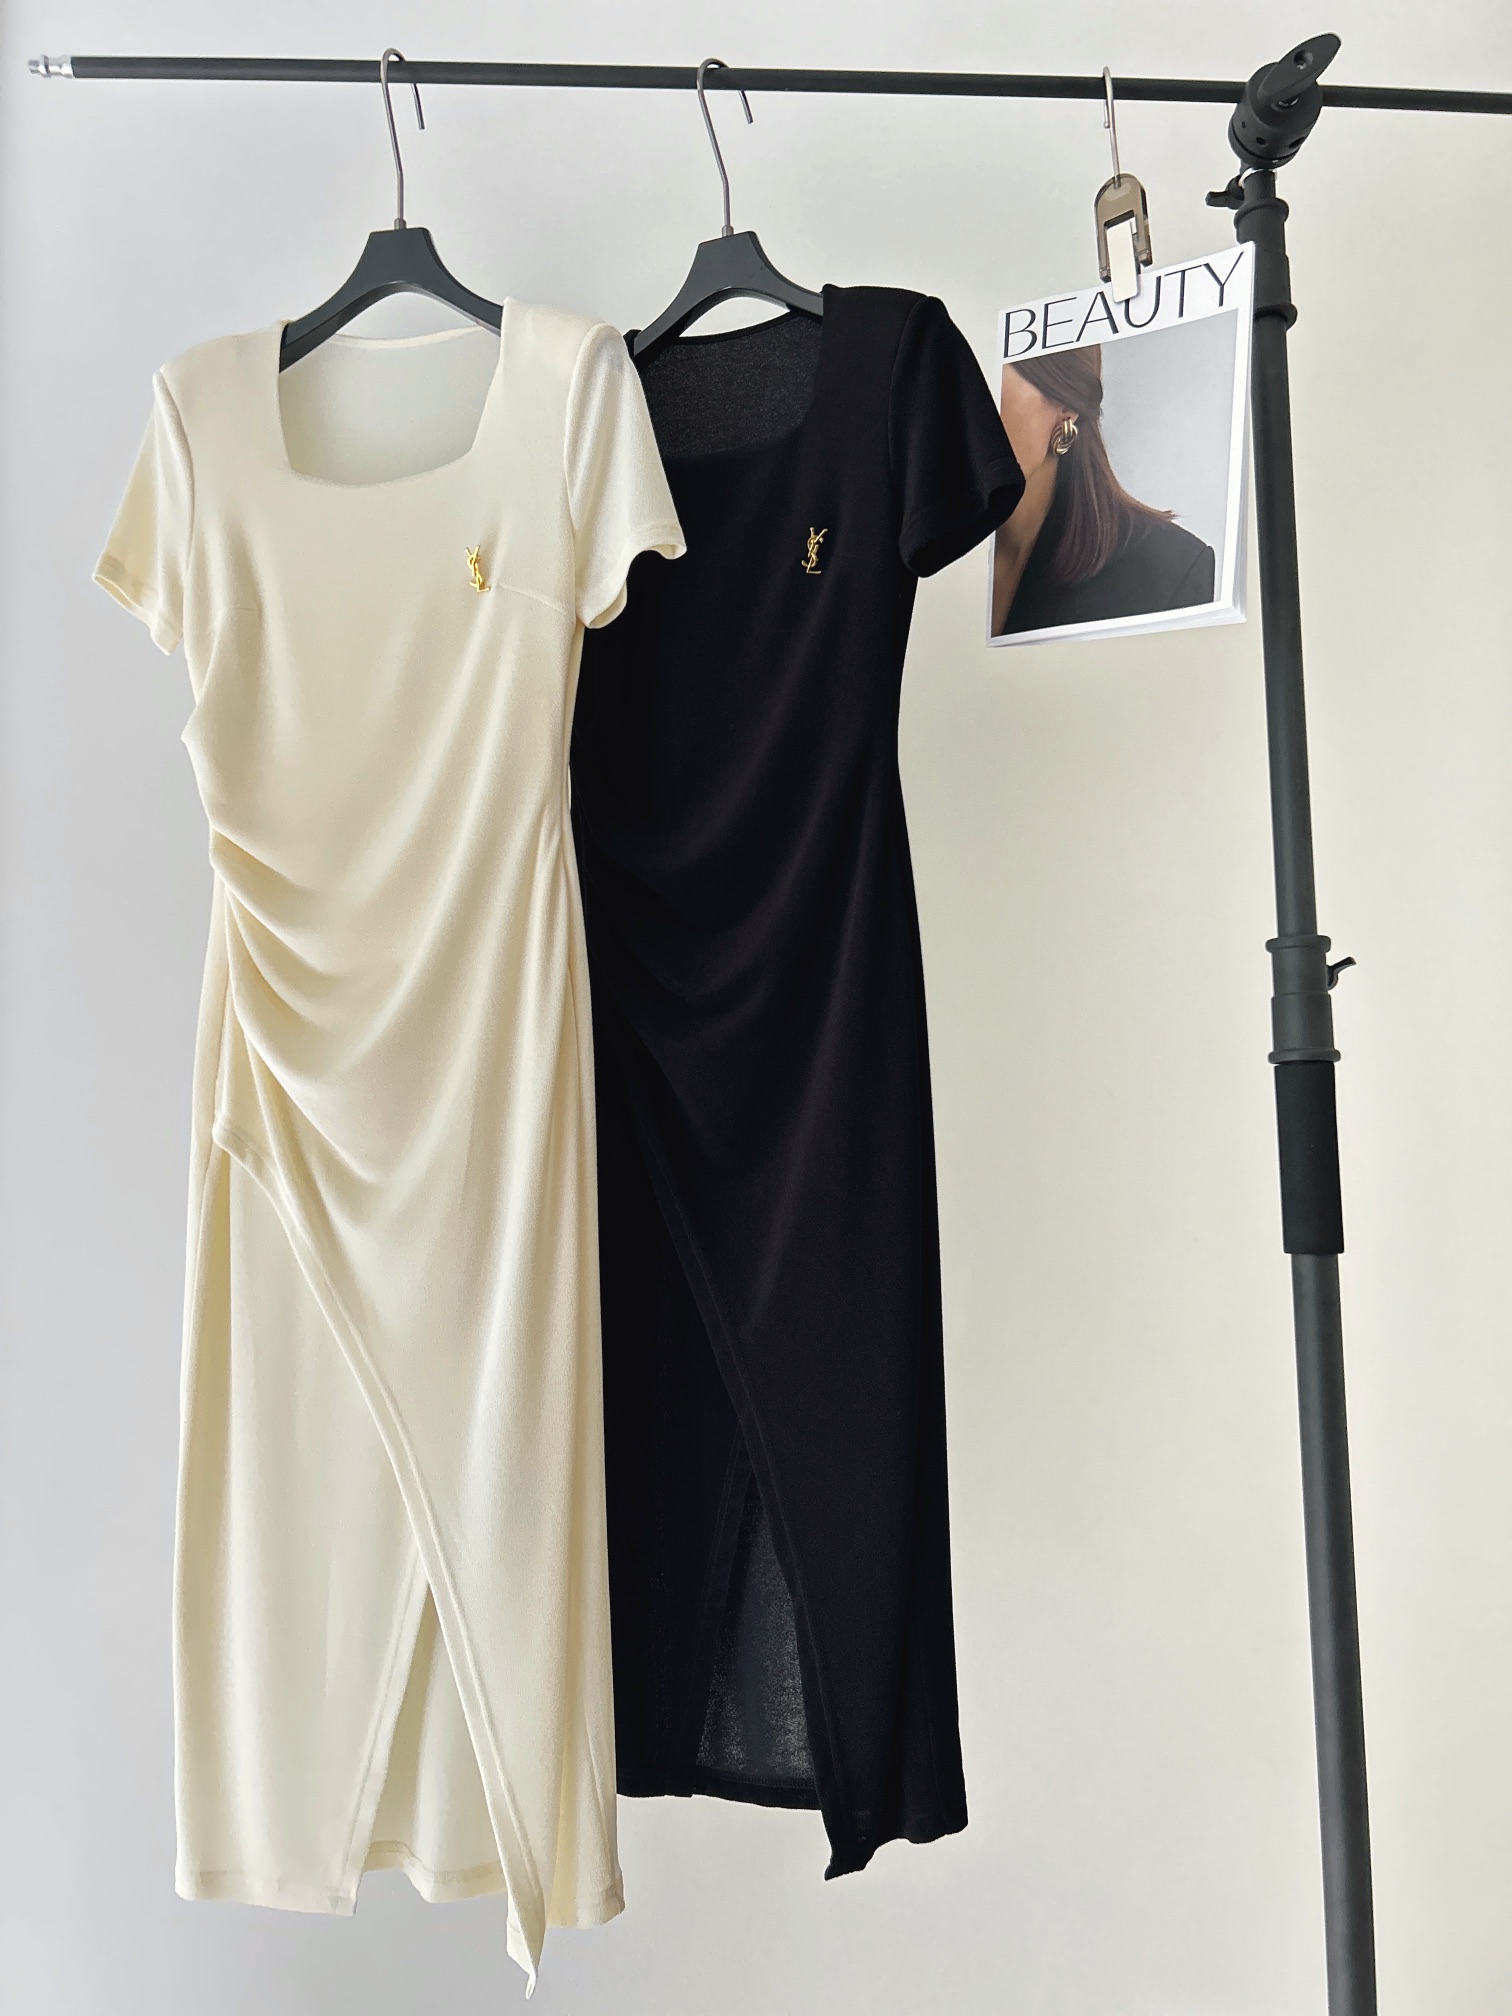 Yves Saint Laurent Ropa Vestidos Colección de verano